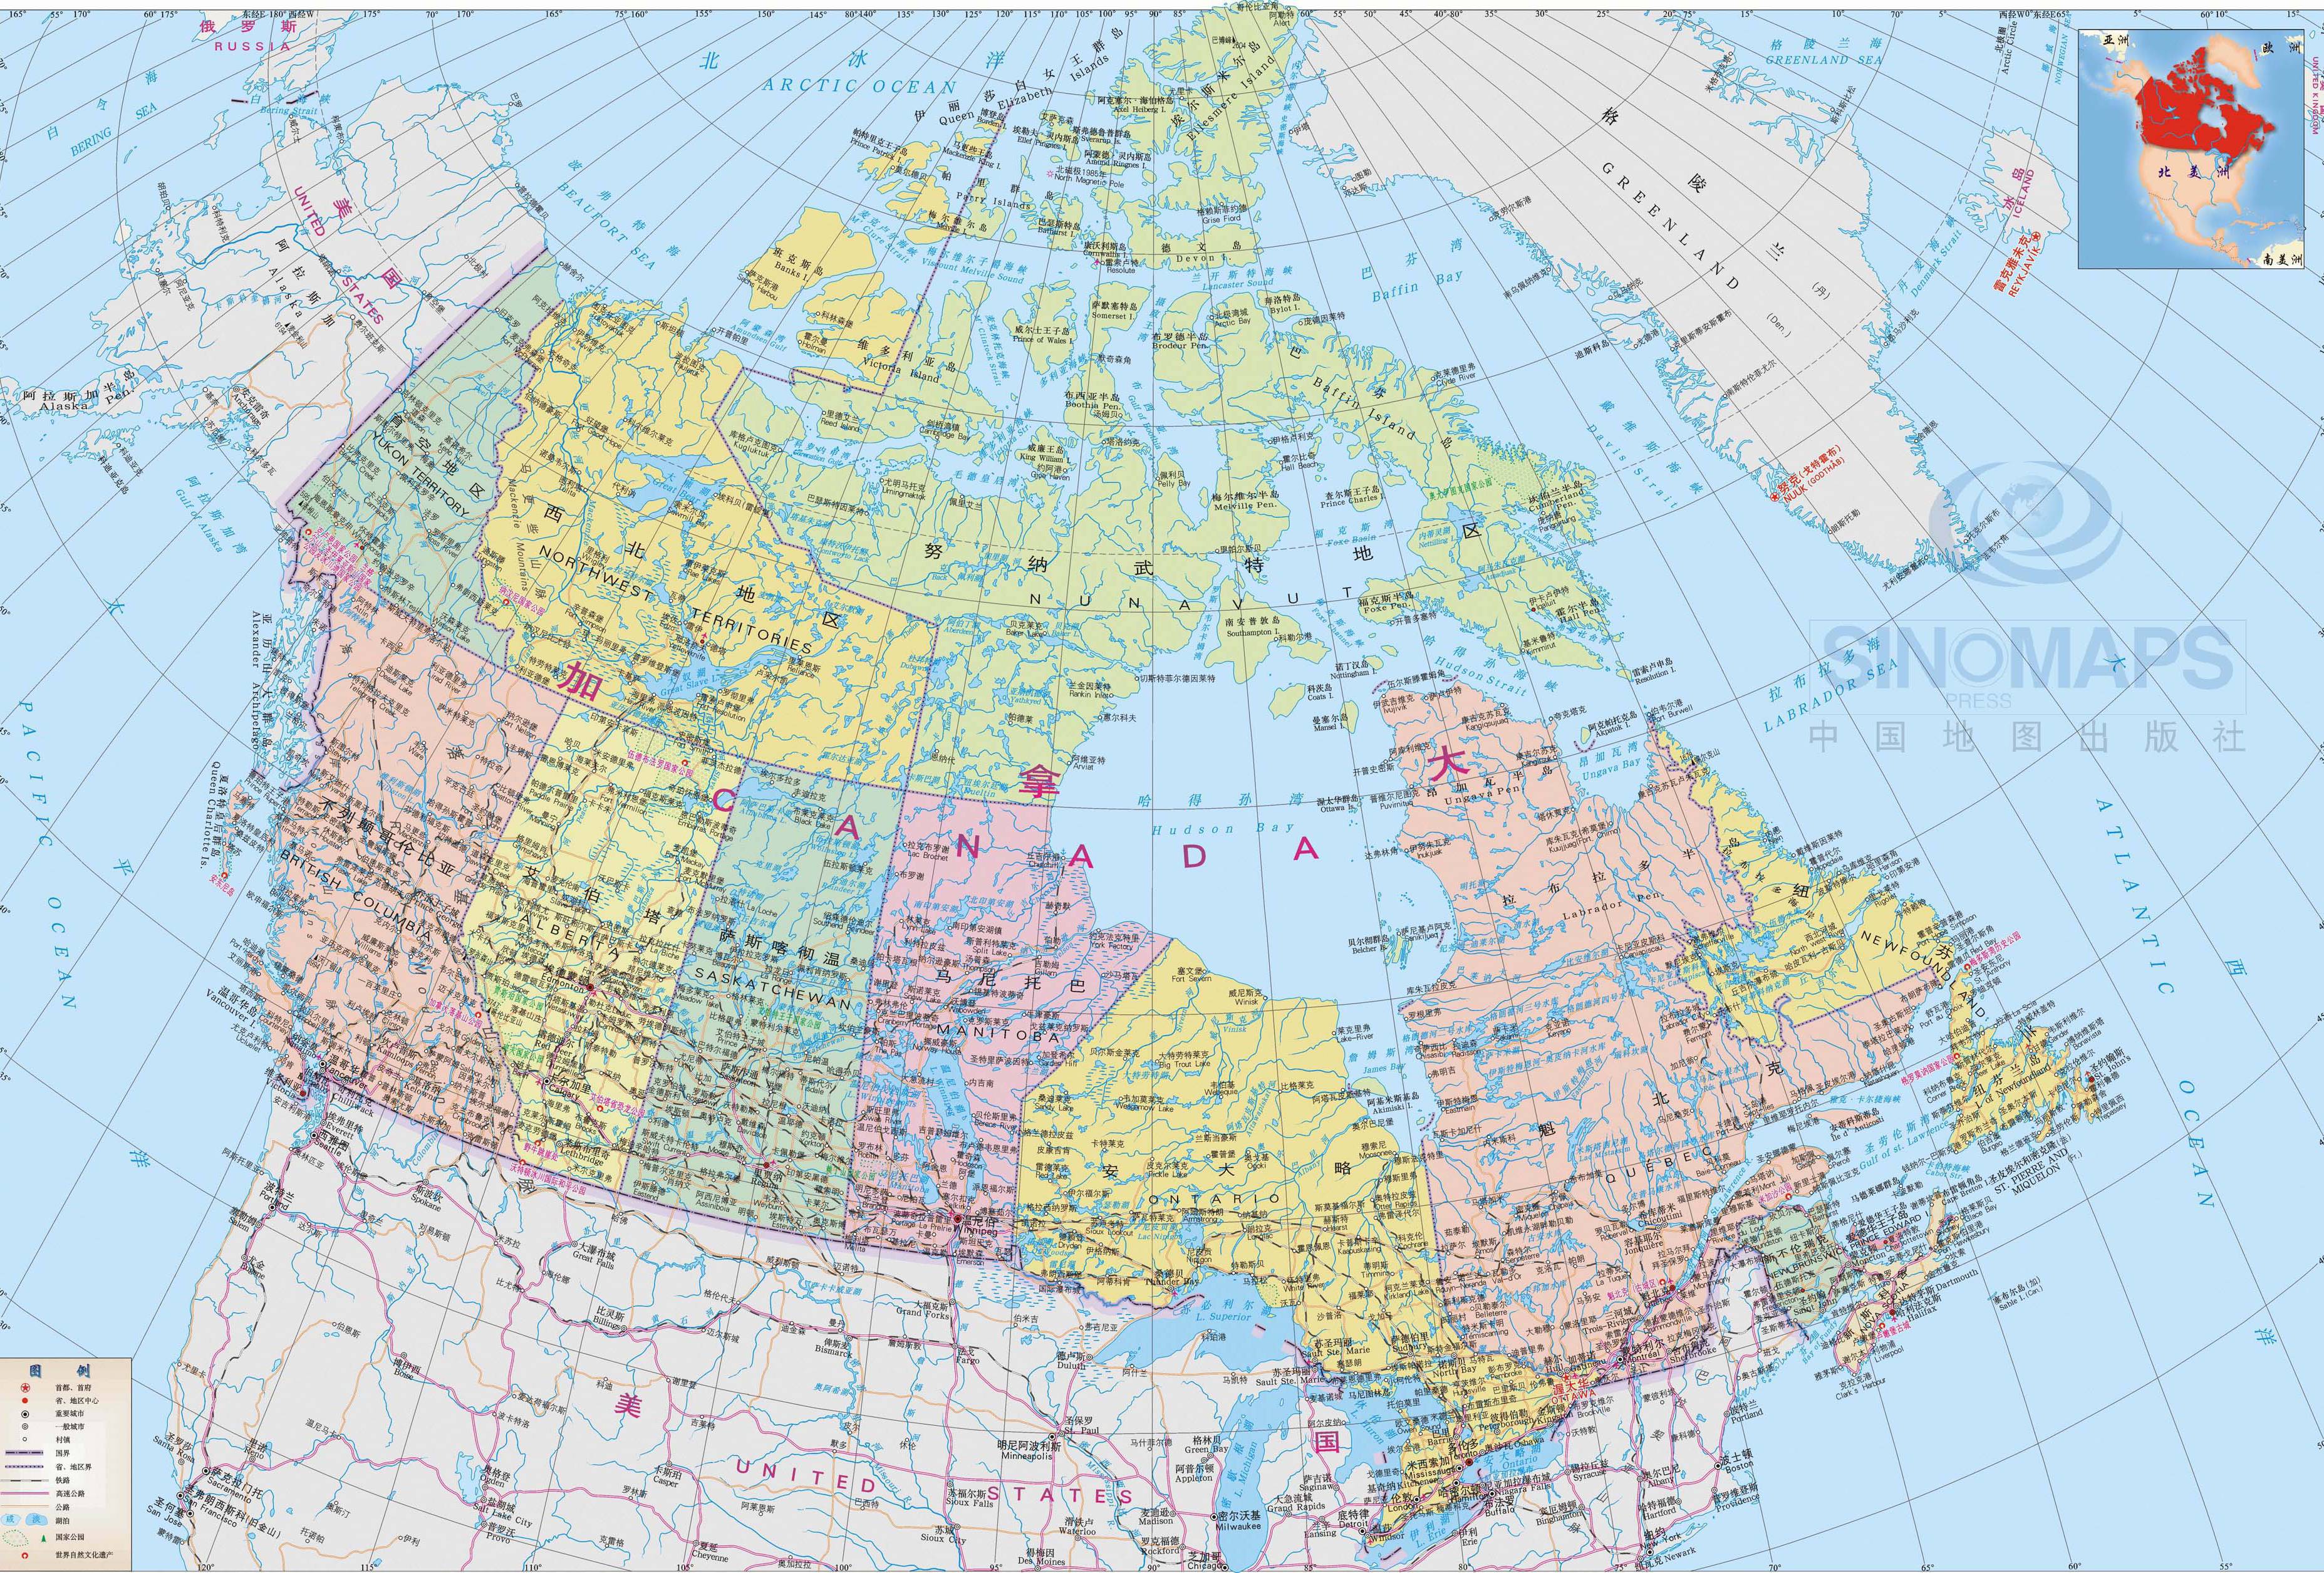 加拿大土地面积图片